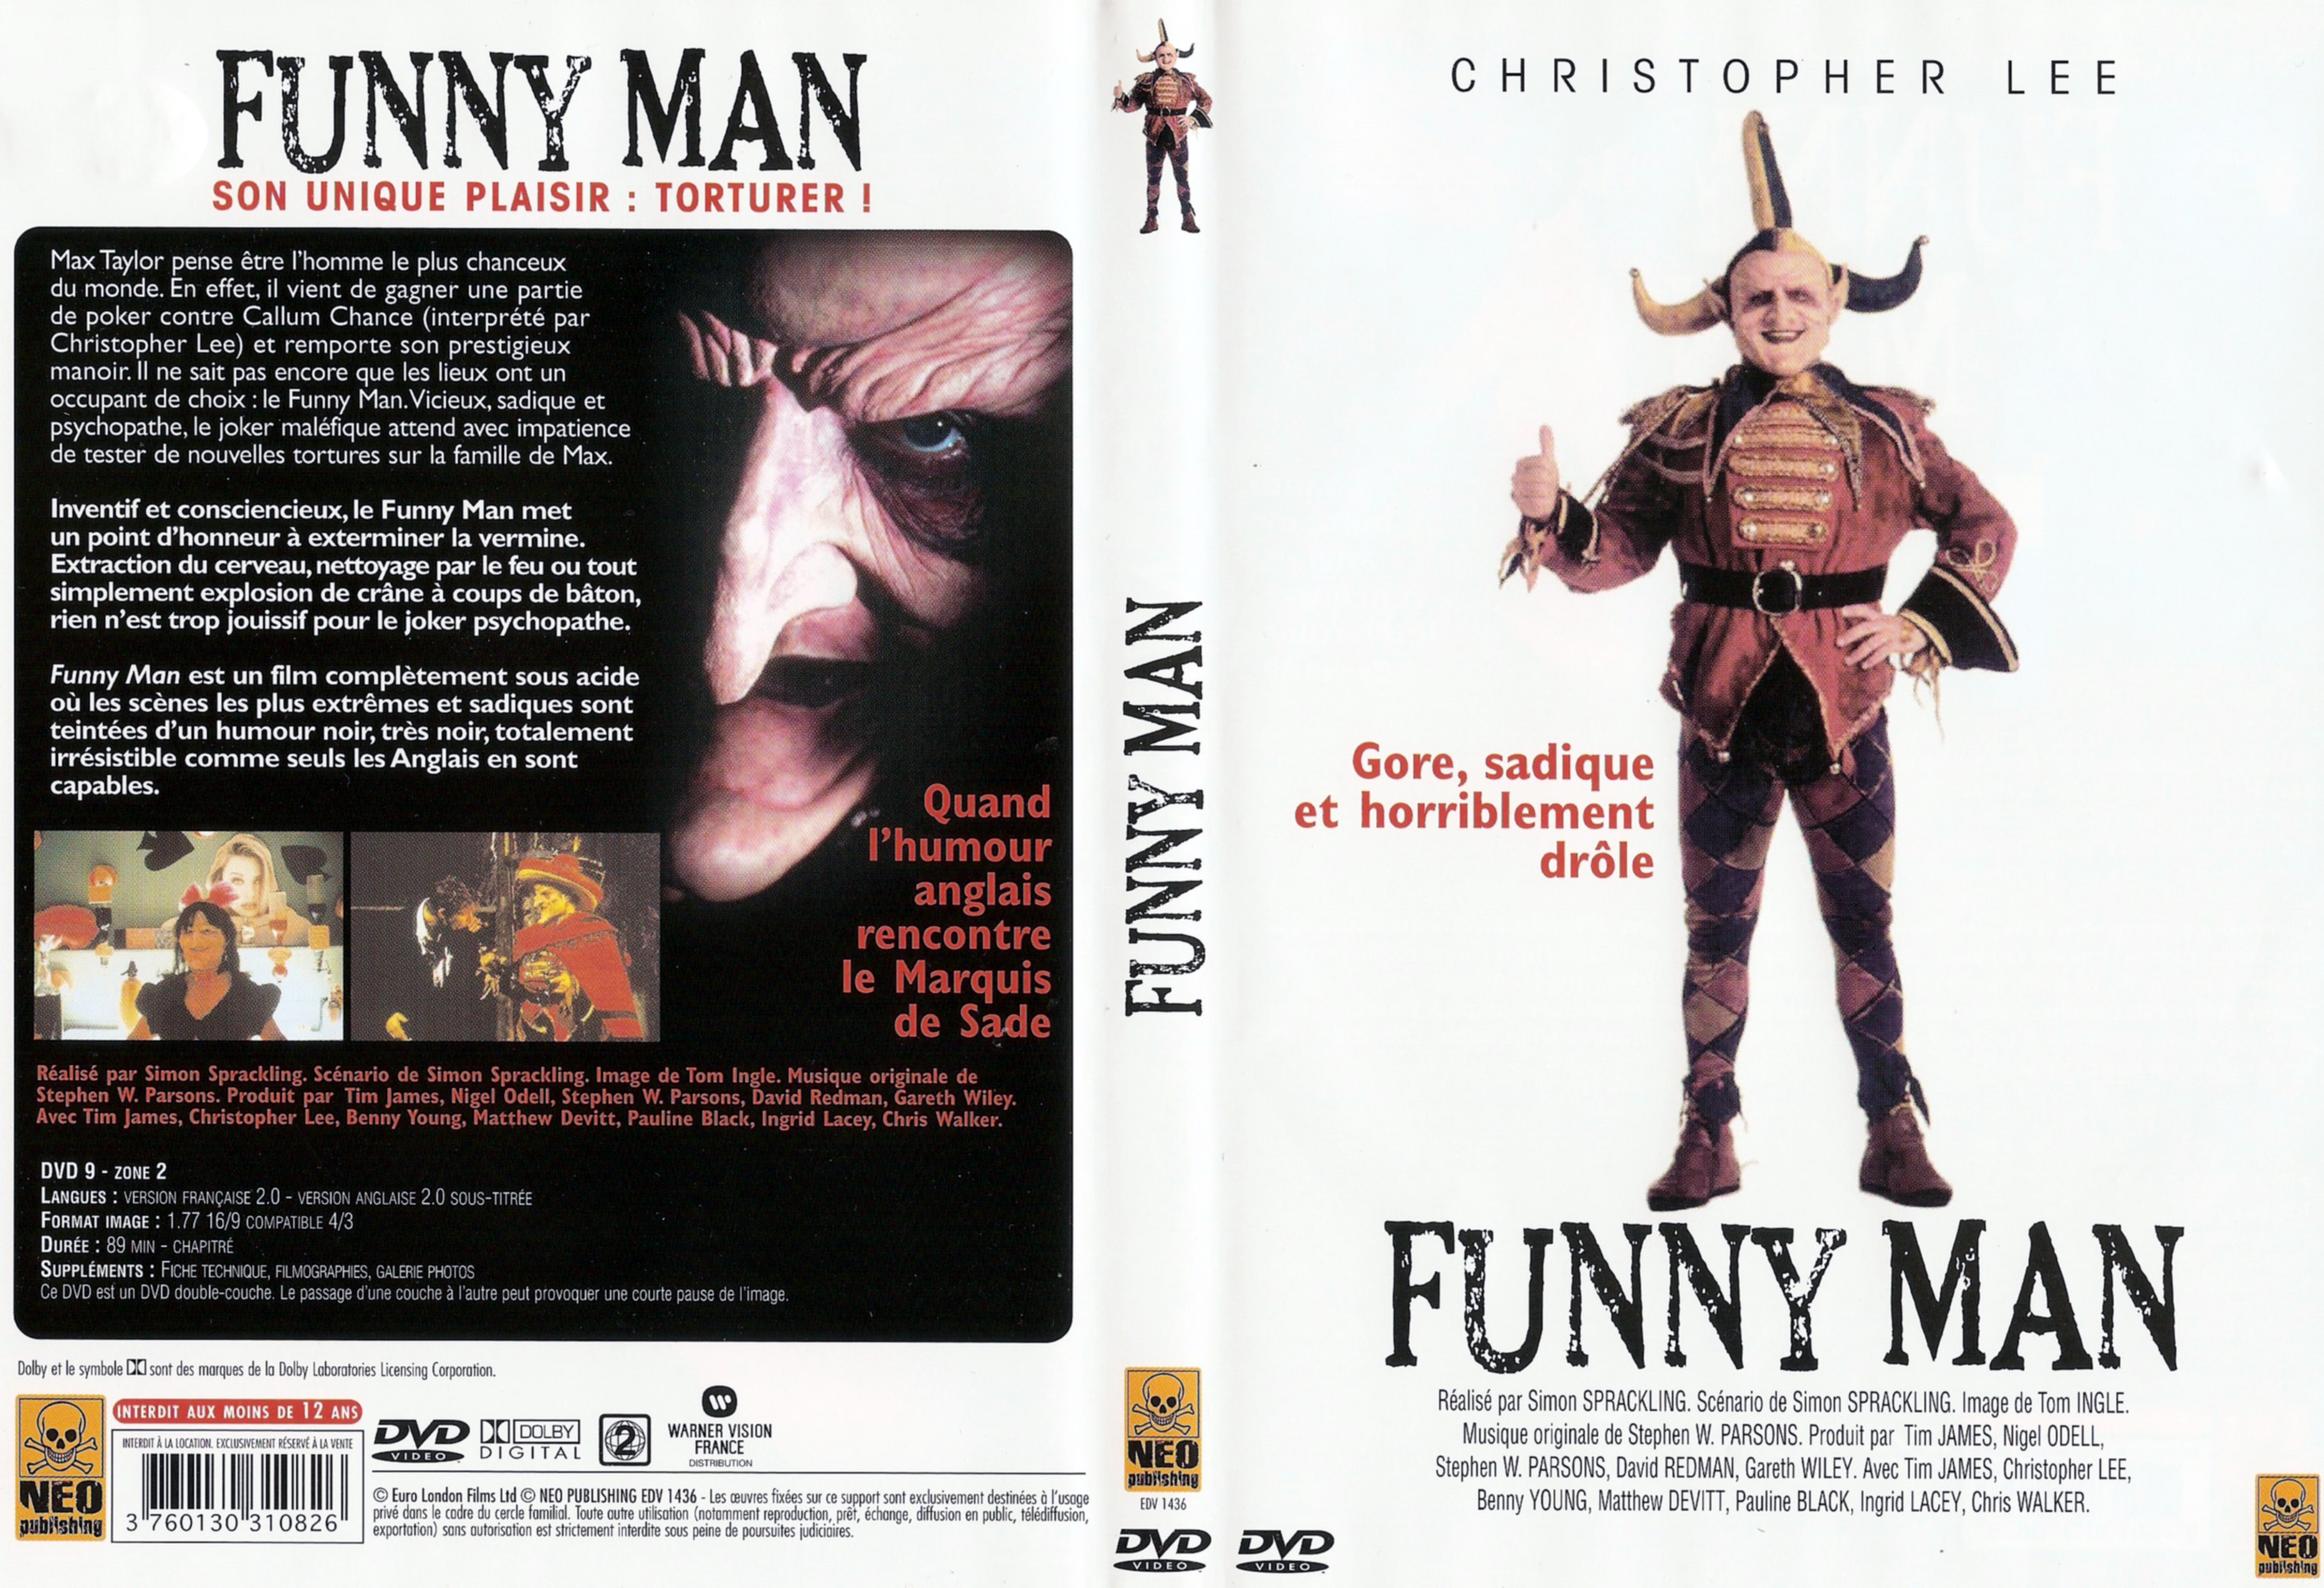 Jaquette DVD Funny Man v2